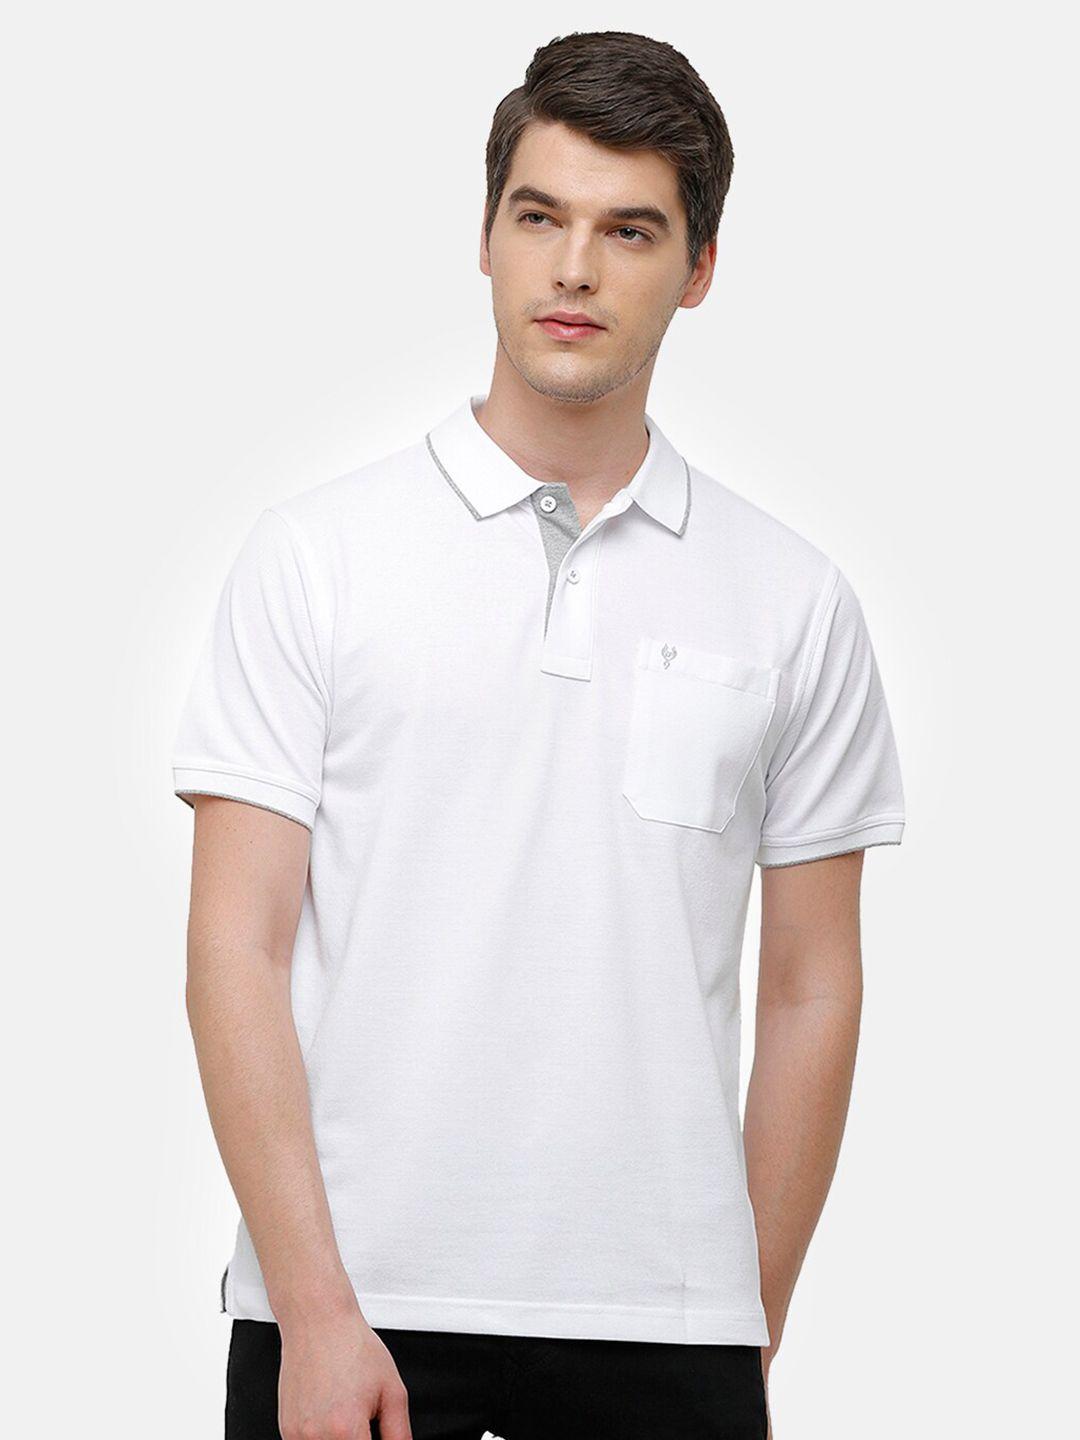 classic polo men white polo collar t-shirt